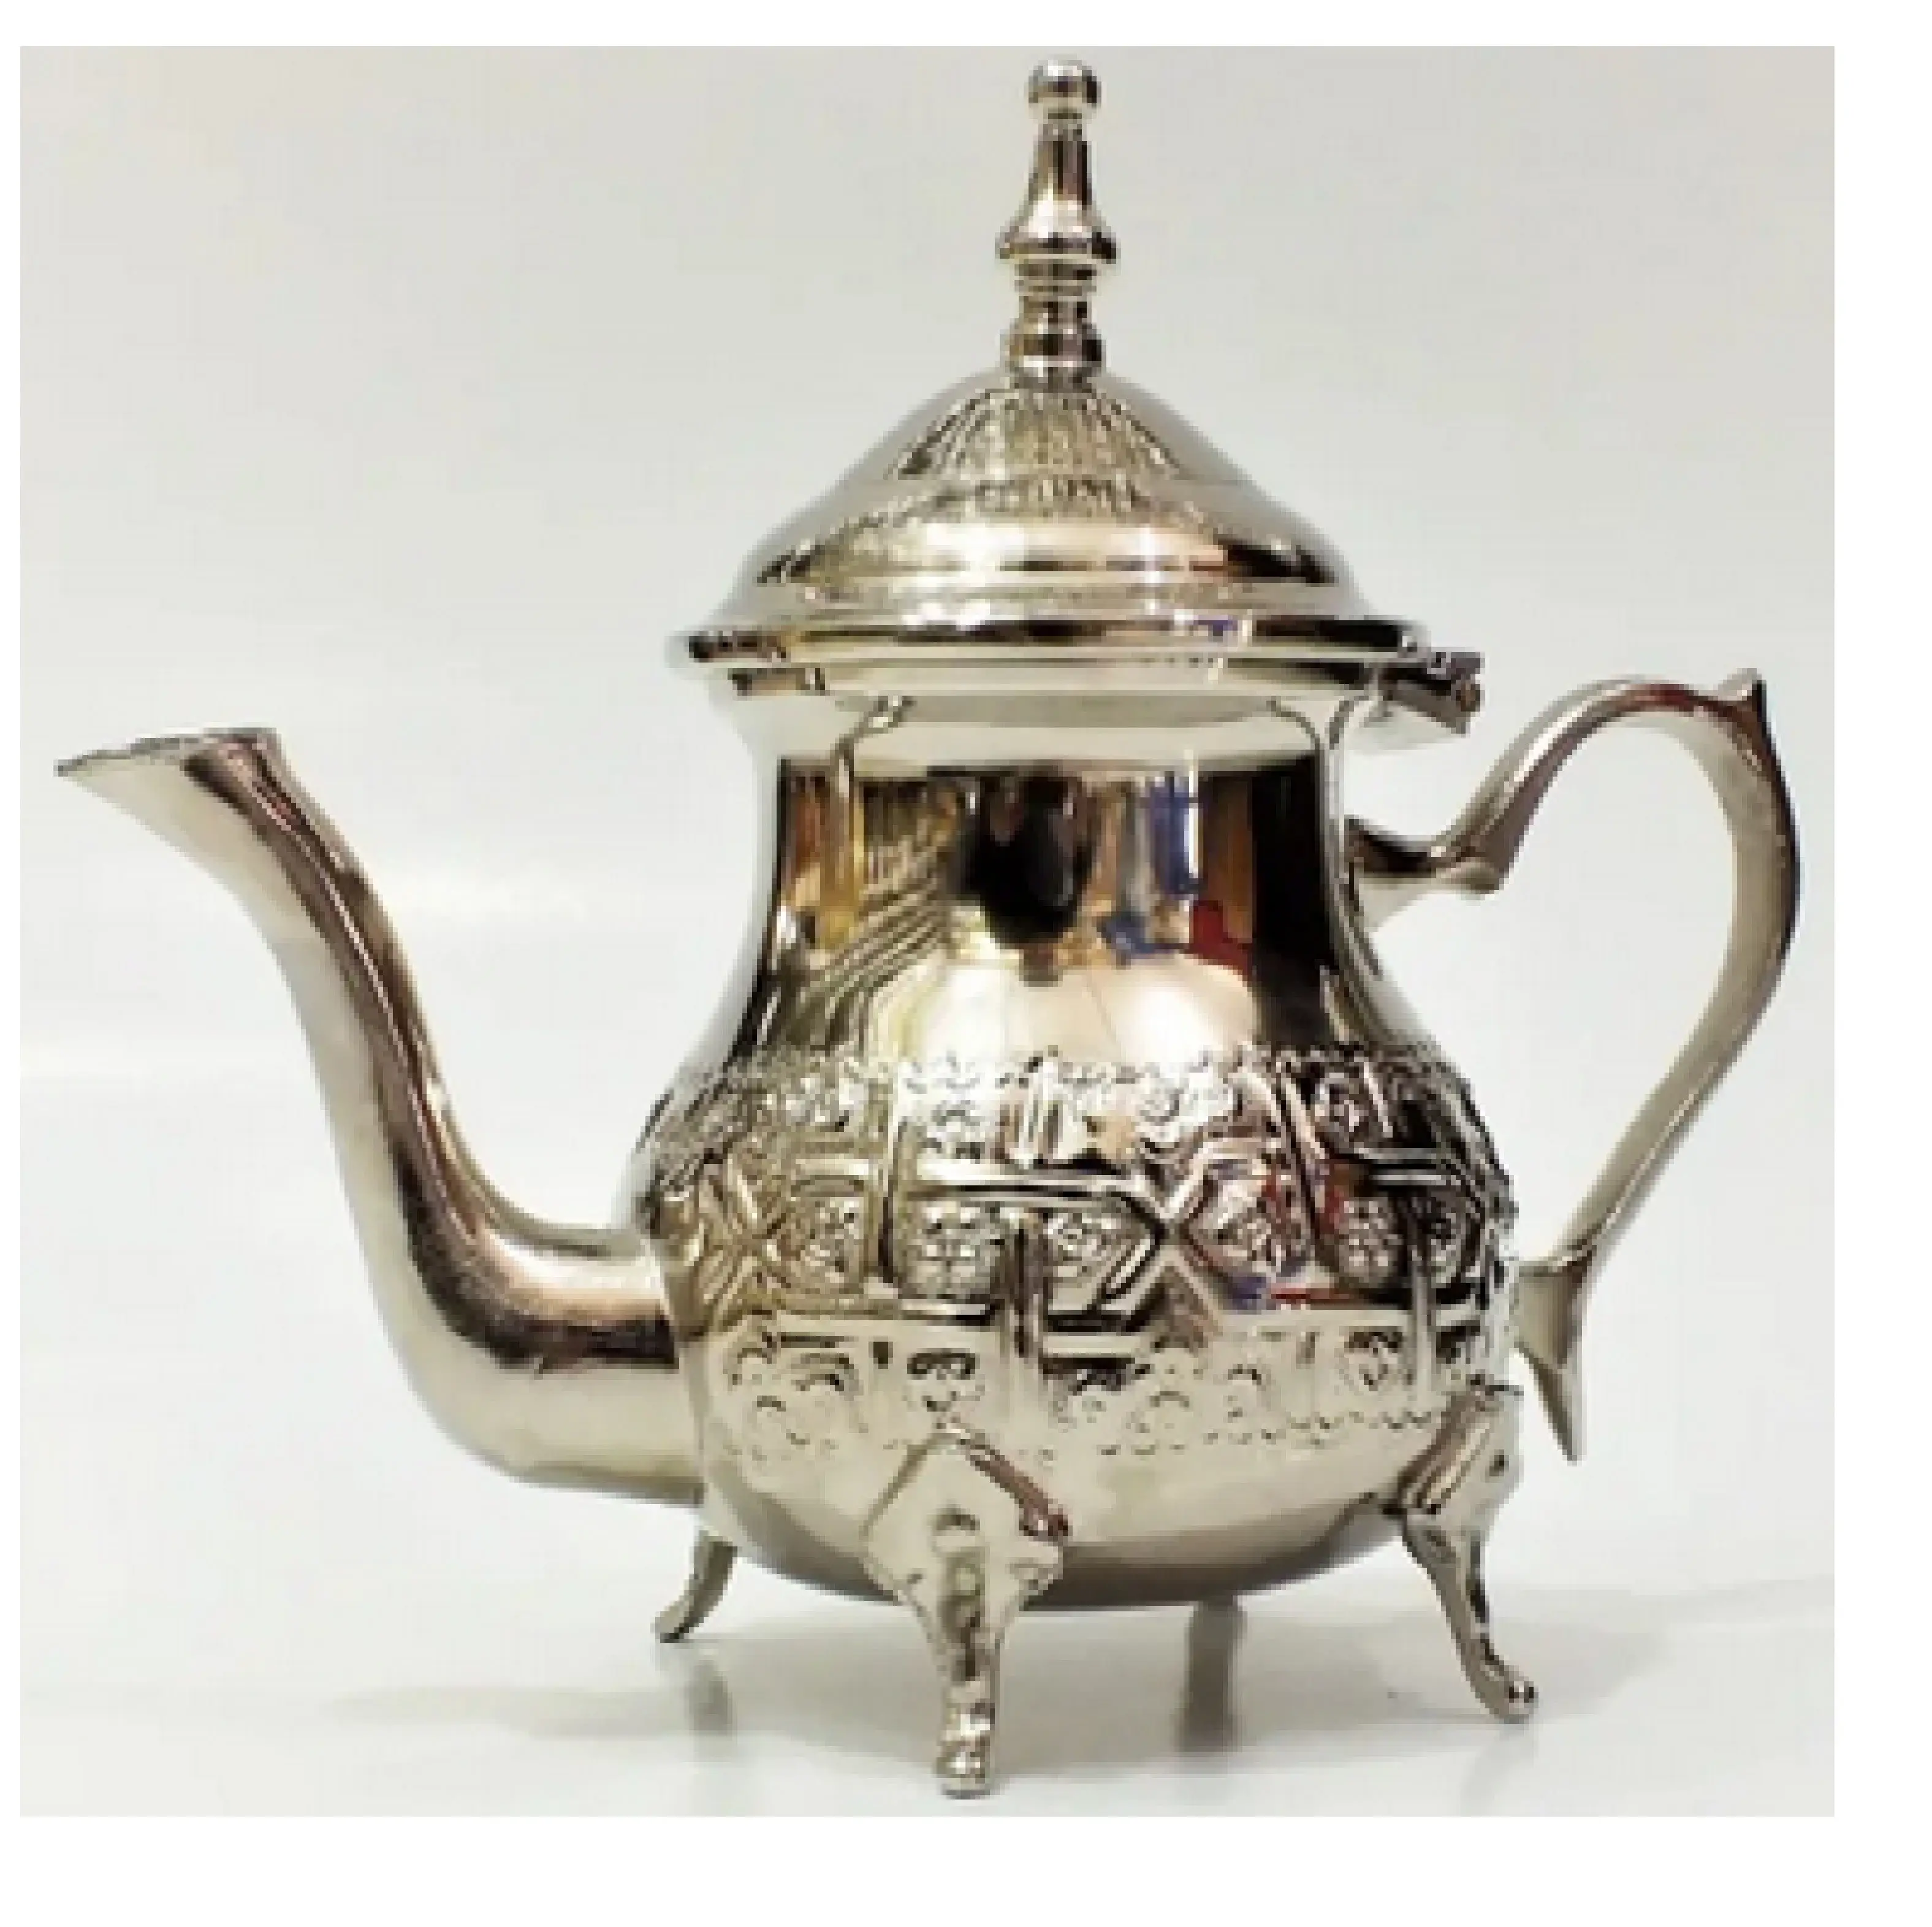 Exporteur von Messing gegossen Teekanne Kessel Vintage Verkauf Messing arabischen Kaffee und Teekanne Made India